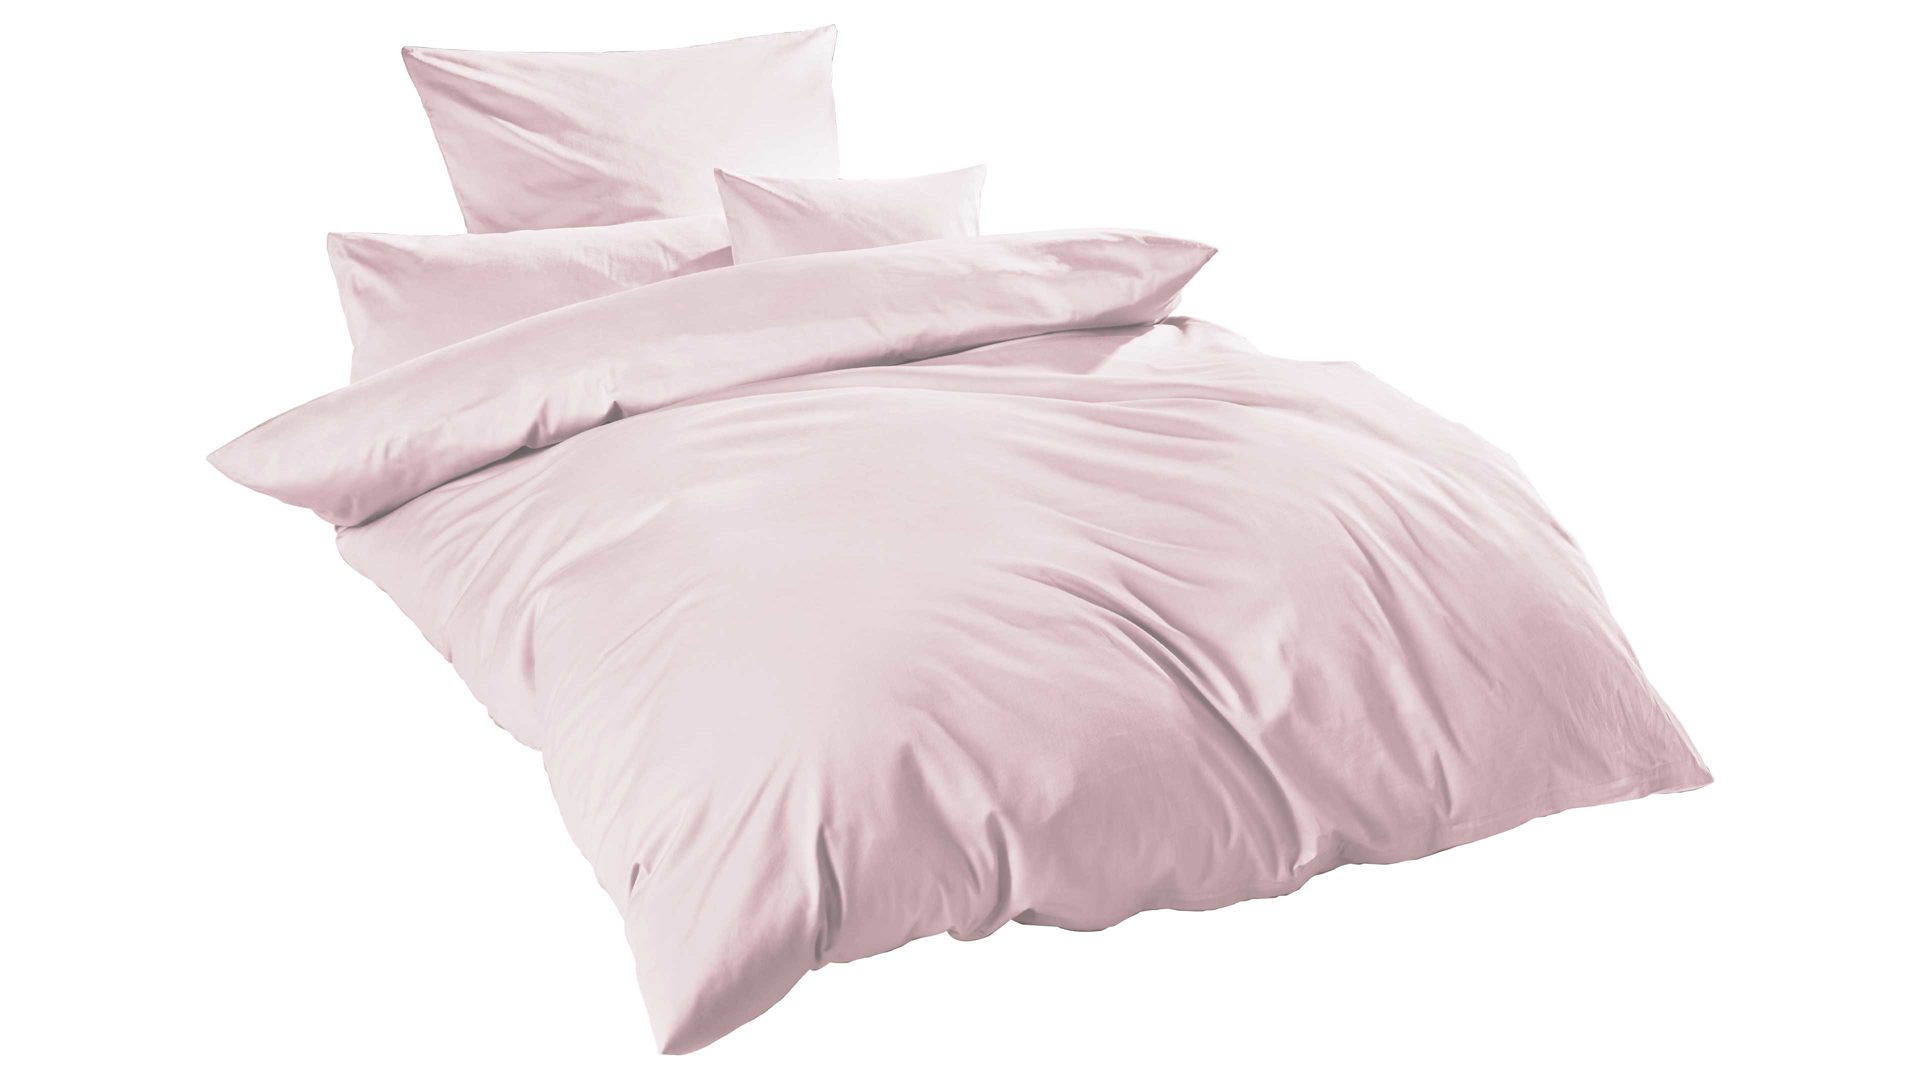 Bettwäsche-Set H.g. hahn haustextilien aus Stoff in Pink HAHN Luxus-Satin-Bettwäsche Sempre puderfarbener Baumwollsatin – zweiteilig, ca. 155 x 220 cm